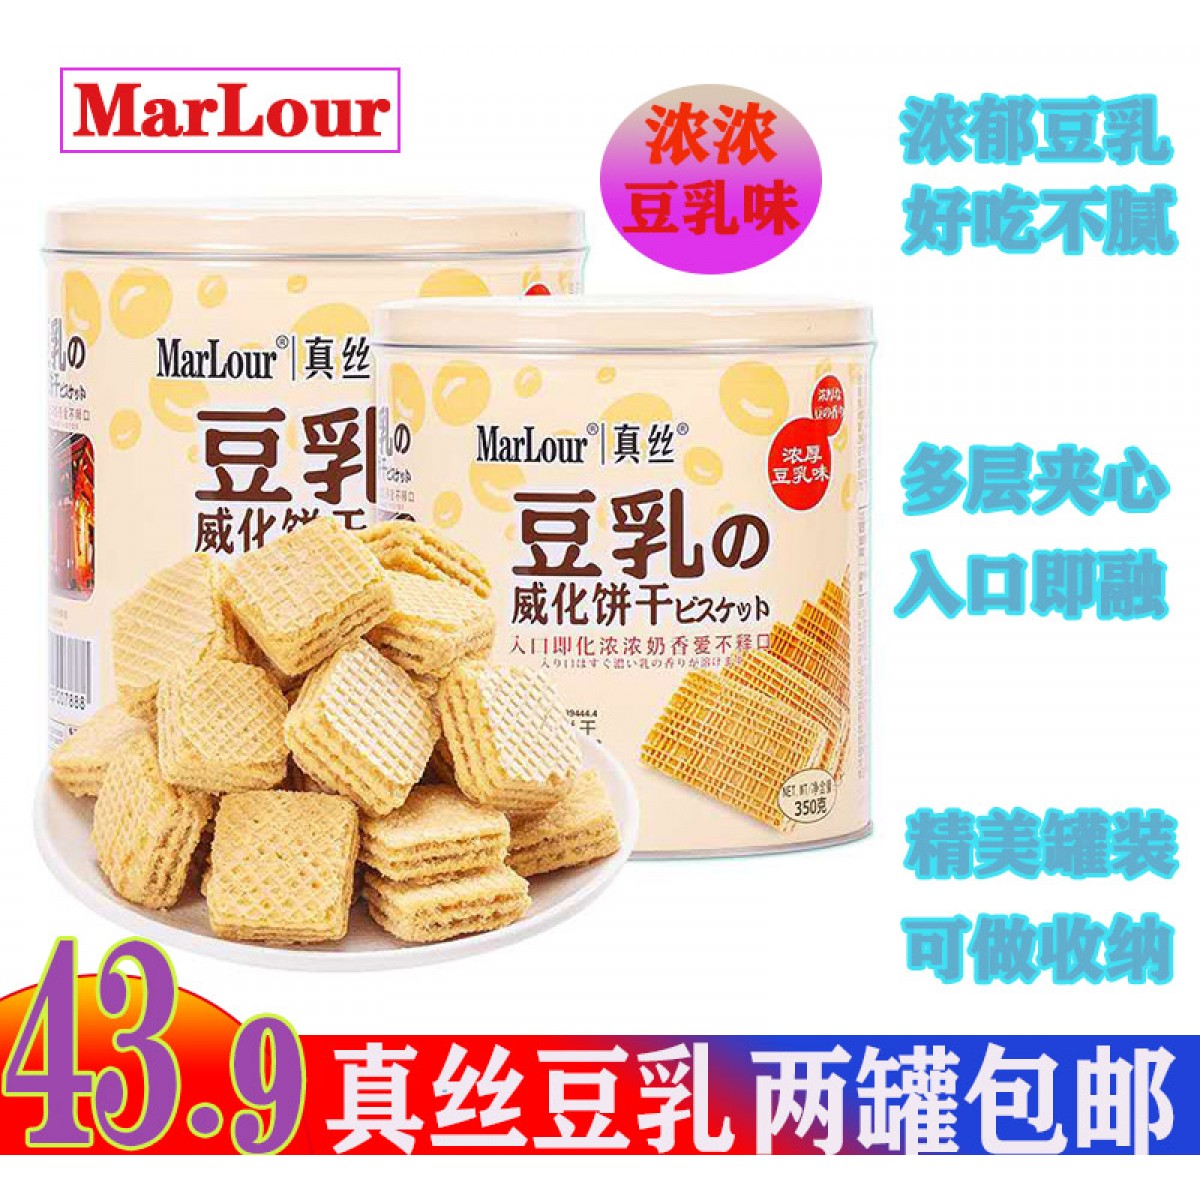 2罐 包邮 MarLour万宝路真丝豆乳威化饼干桶装日本风味茶点小红书推荐350g